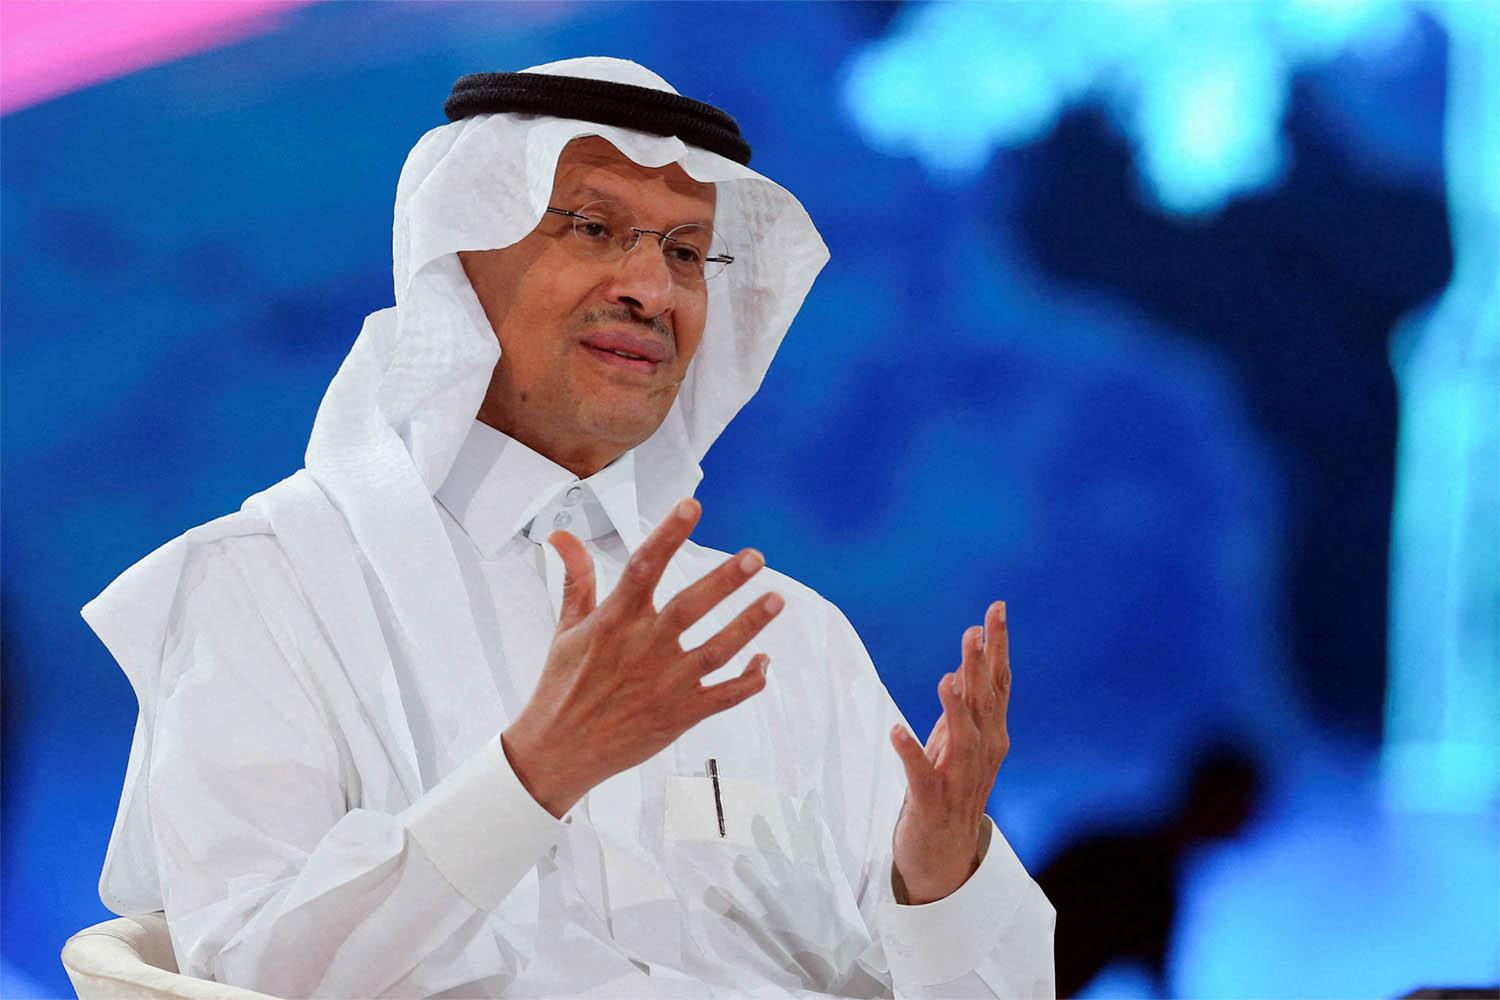 Saudi Arabia's energy minister Prince Abdulaziz bin Salman 